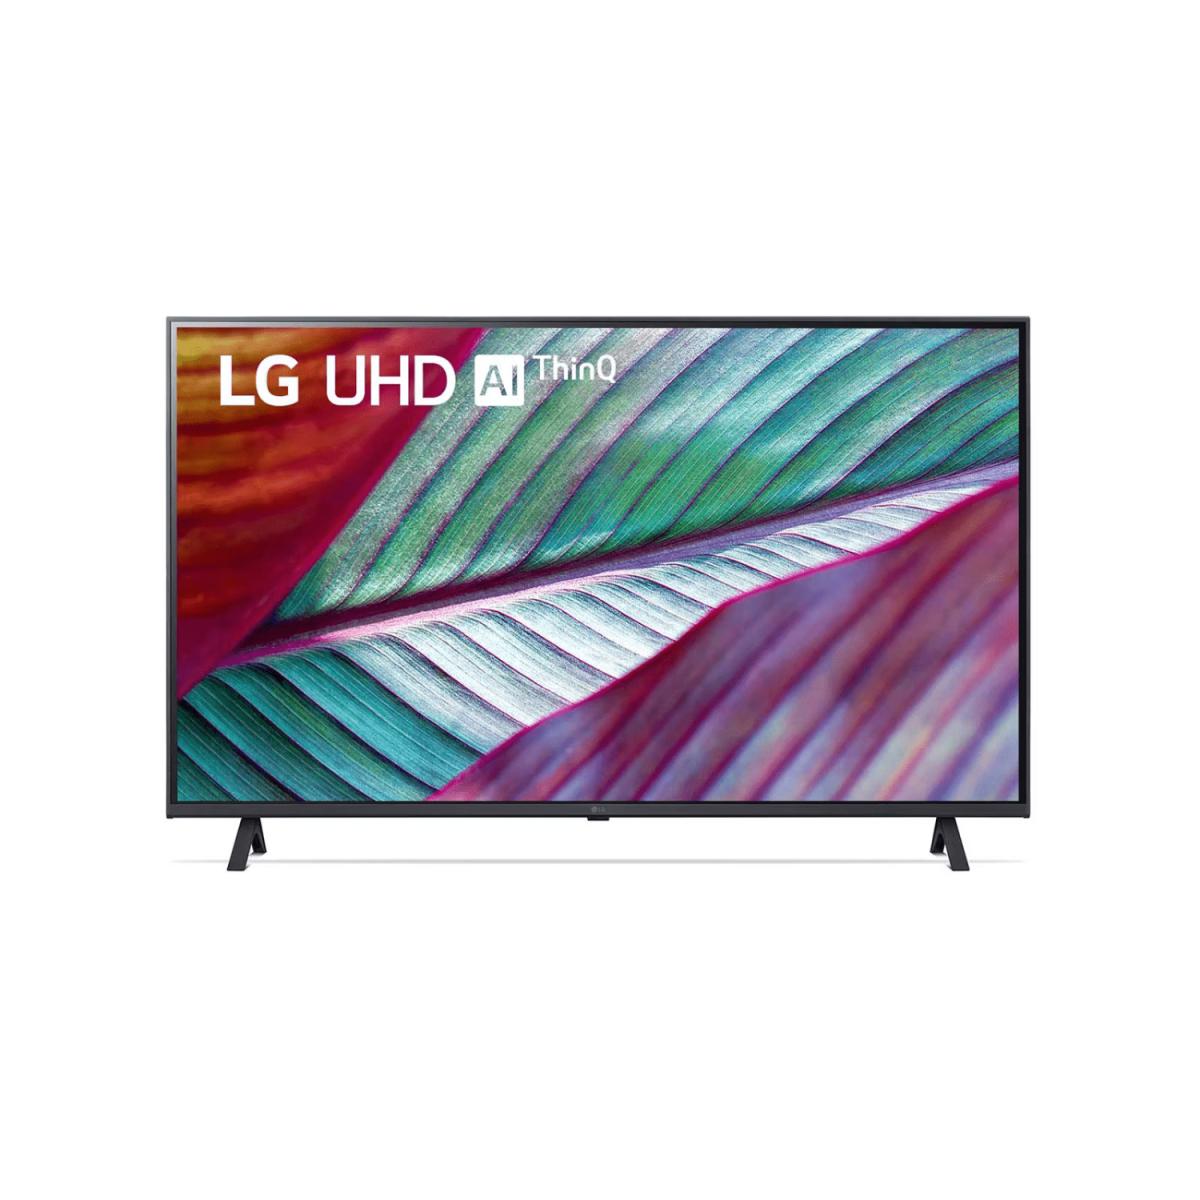 TV LG LED 55" SMART AI THINQ 4K